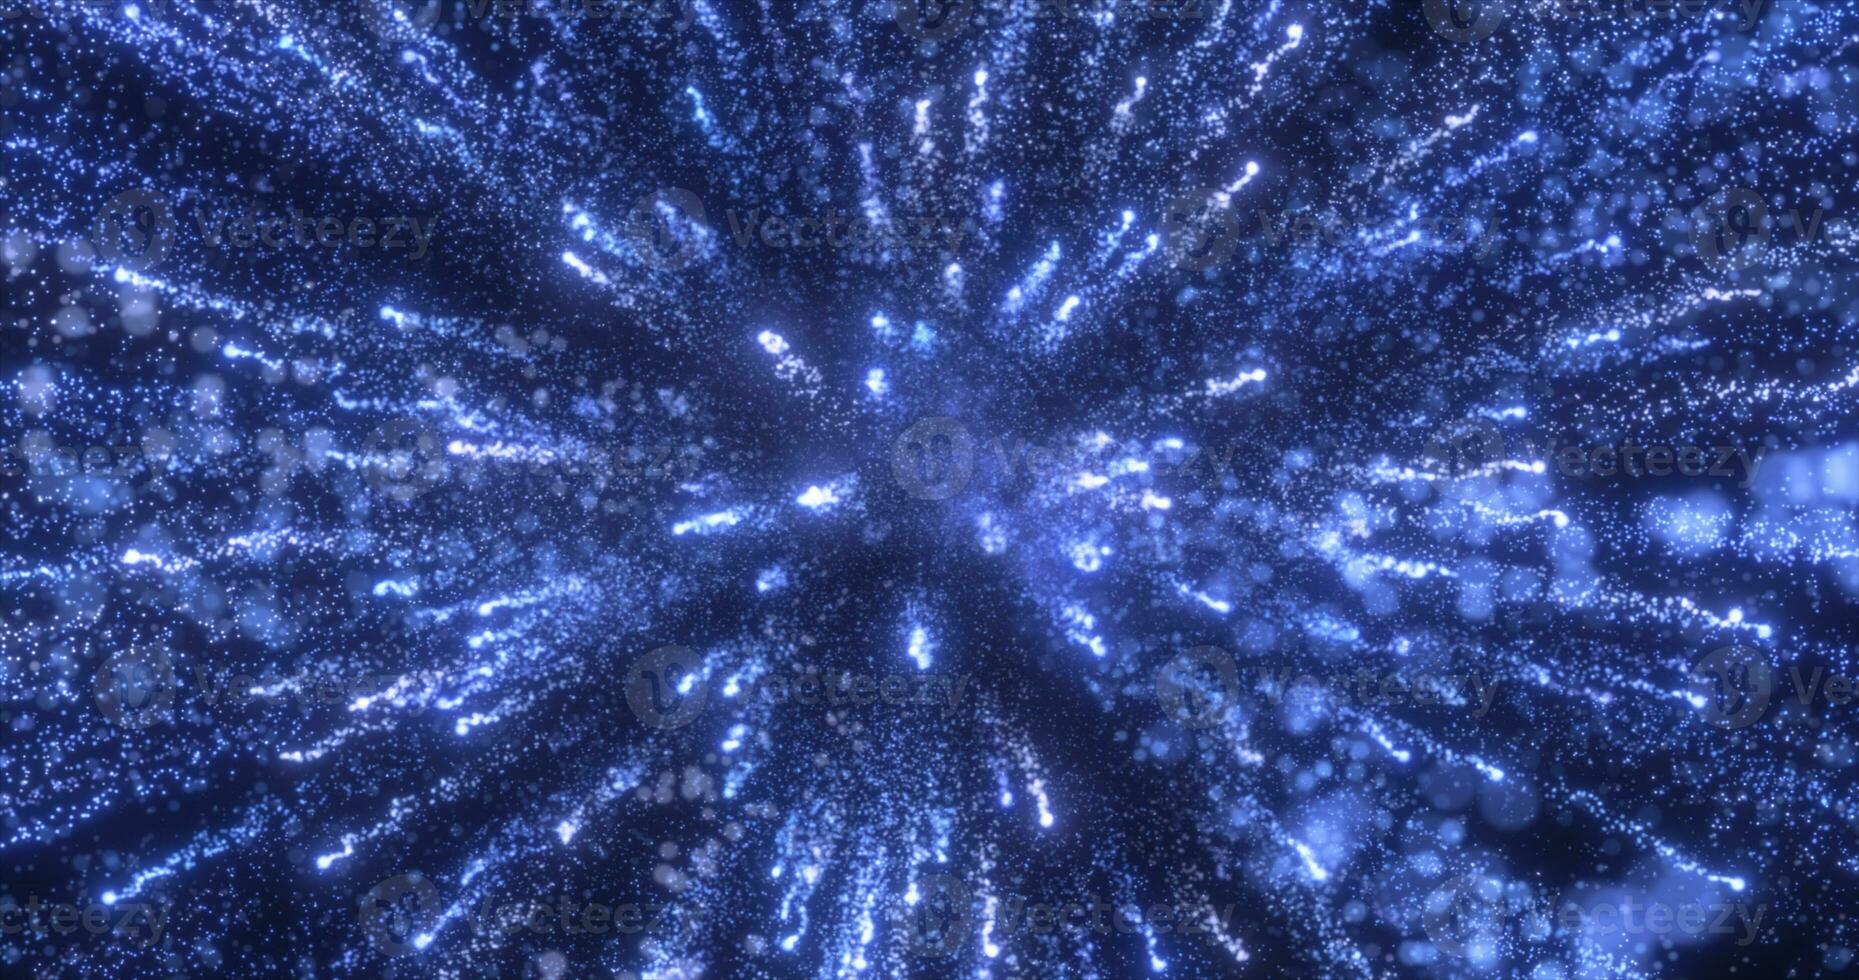 astratto blu energia fuochi d'artificio particella saluto magico luminosa raggiante futuristico hi-tech con sfocatura effetto e bokeh sfondo foto